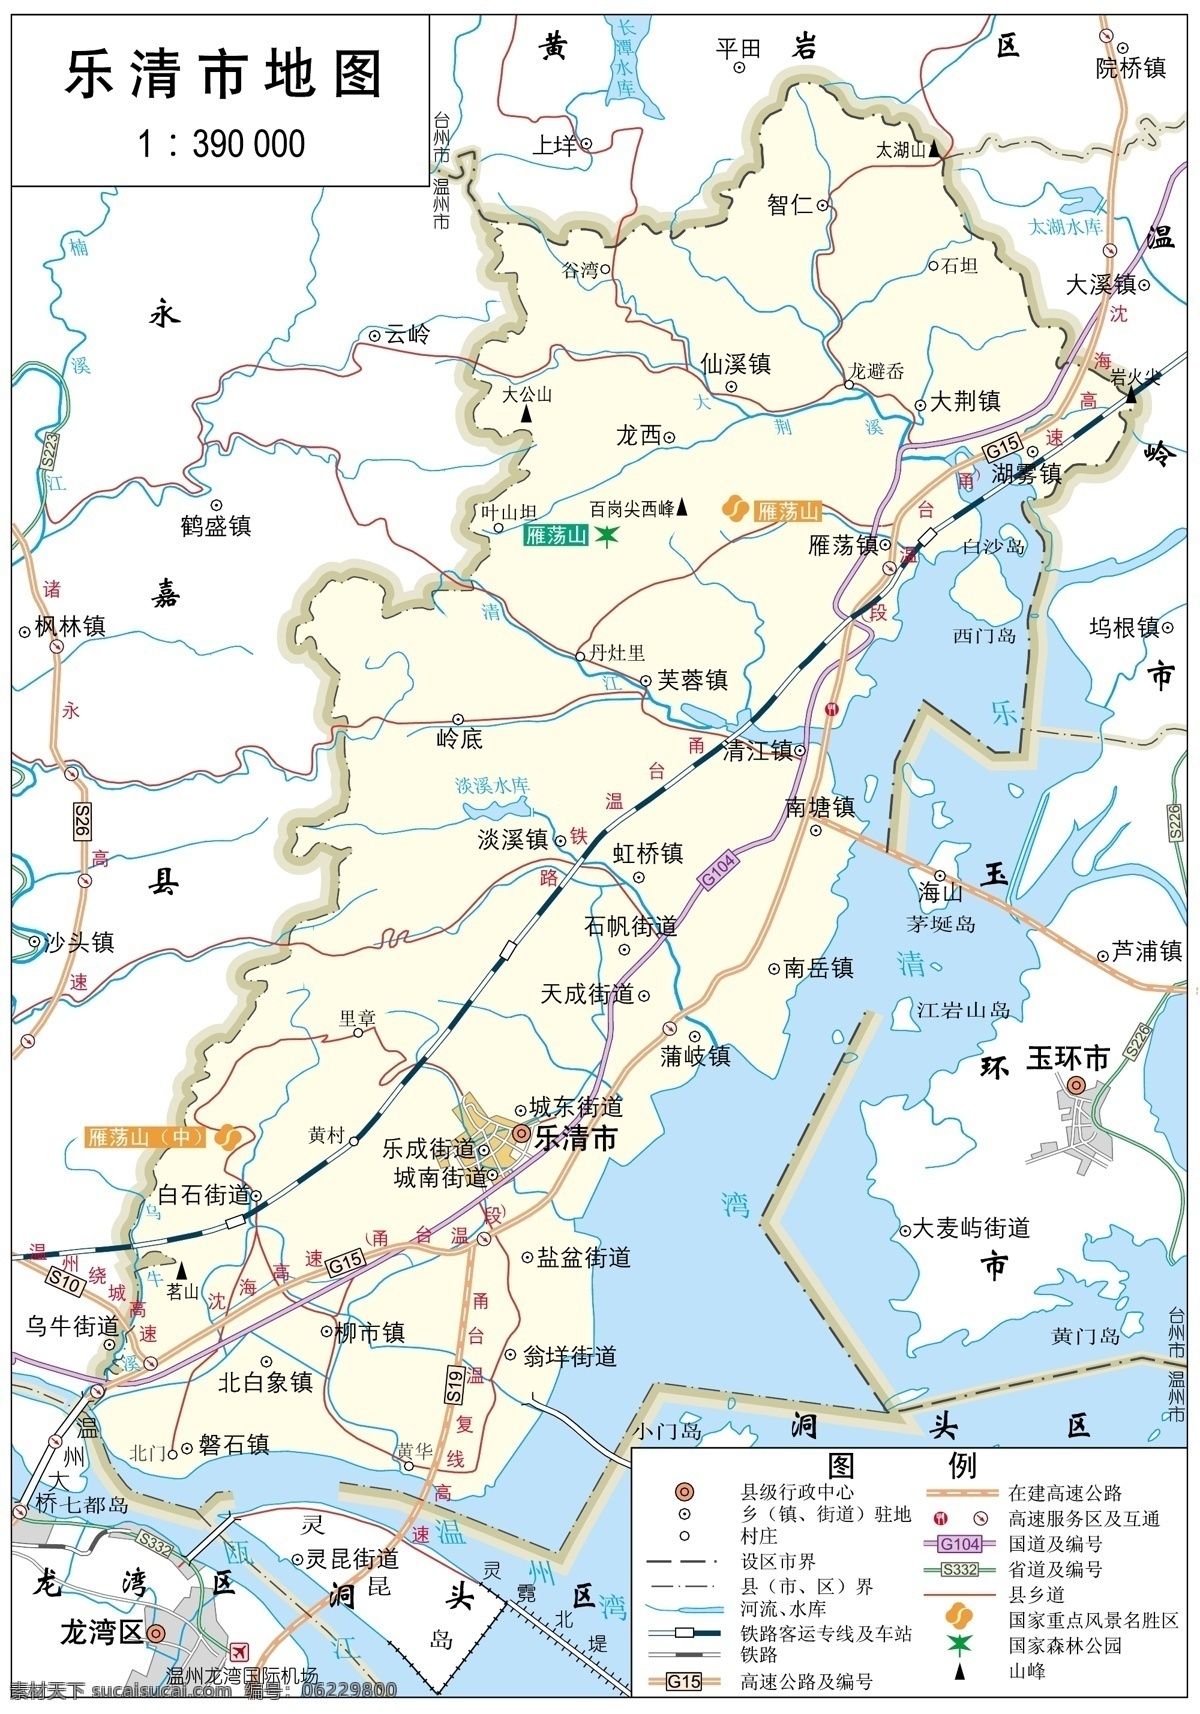 浙江 温州市 乐清市 标准 地图 32k 浙江地图 温州市地图 标准地图 地图模板 温州地图 乐清市地图